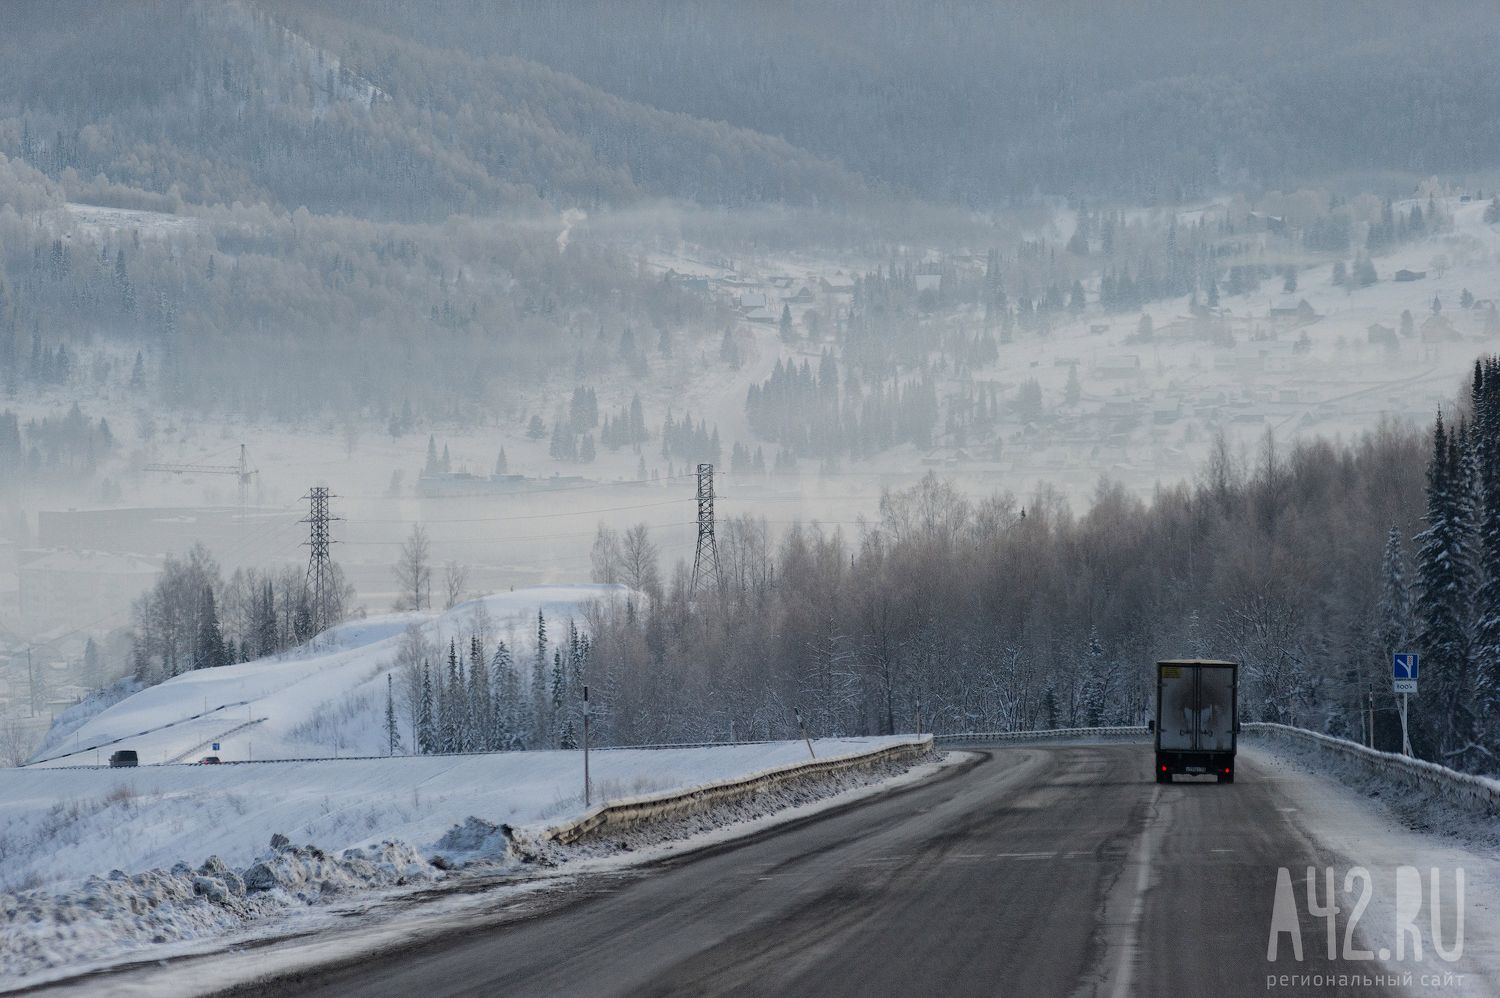 ГИБДД предупредила кузбассовцев об ухудшении погоды и снижении видимости на дорогах